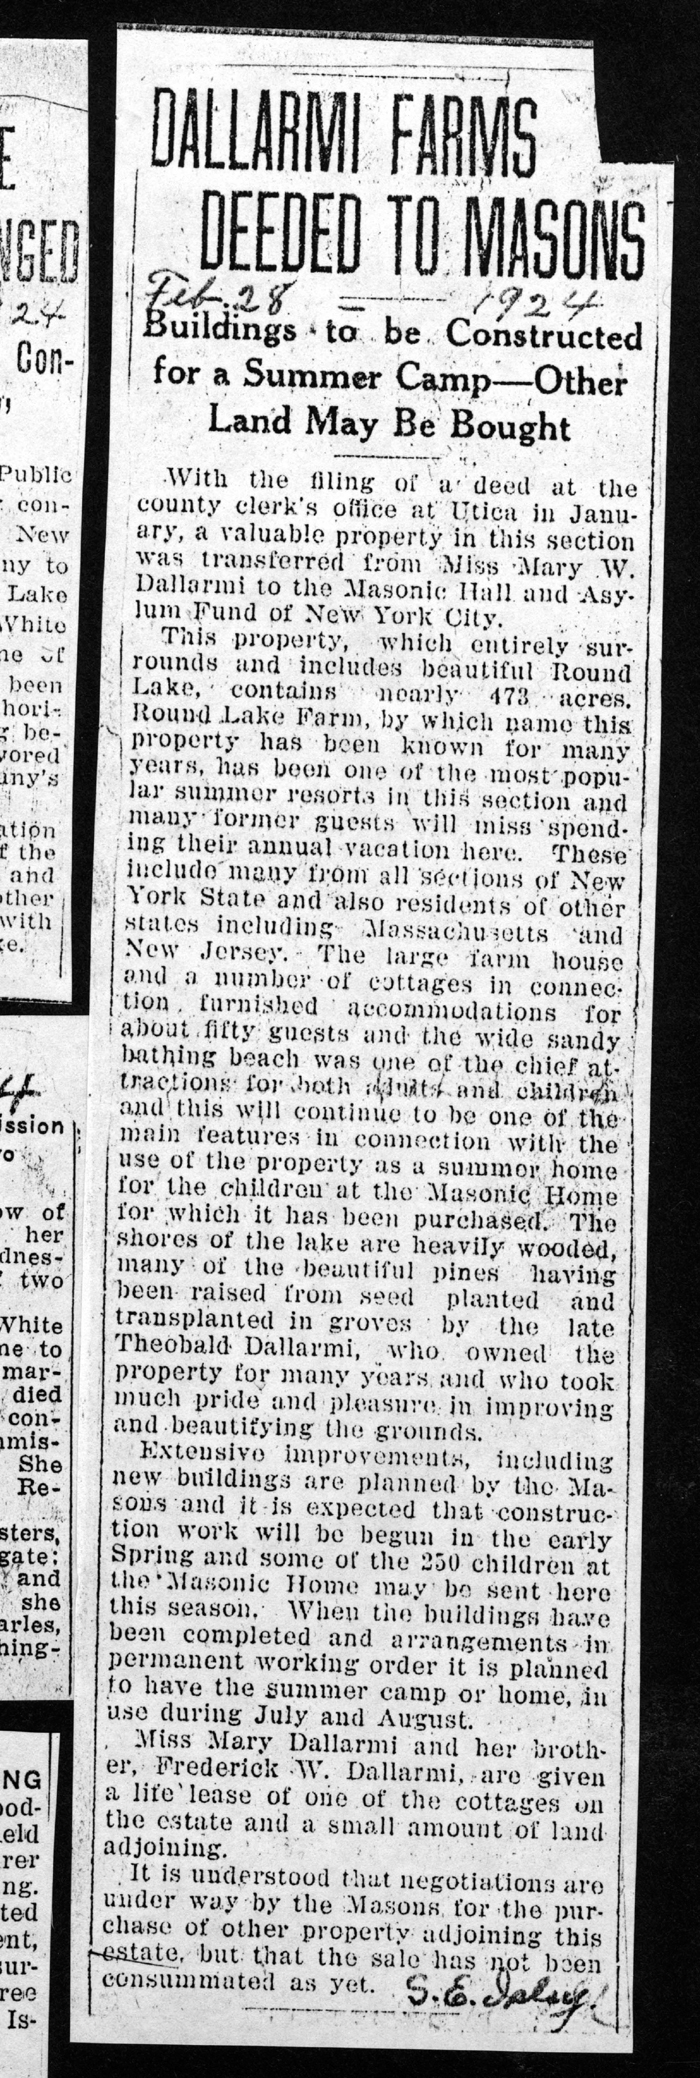 dallarmi farms deeded to masons feb 28 1924